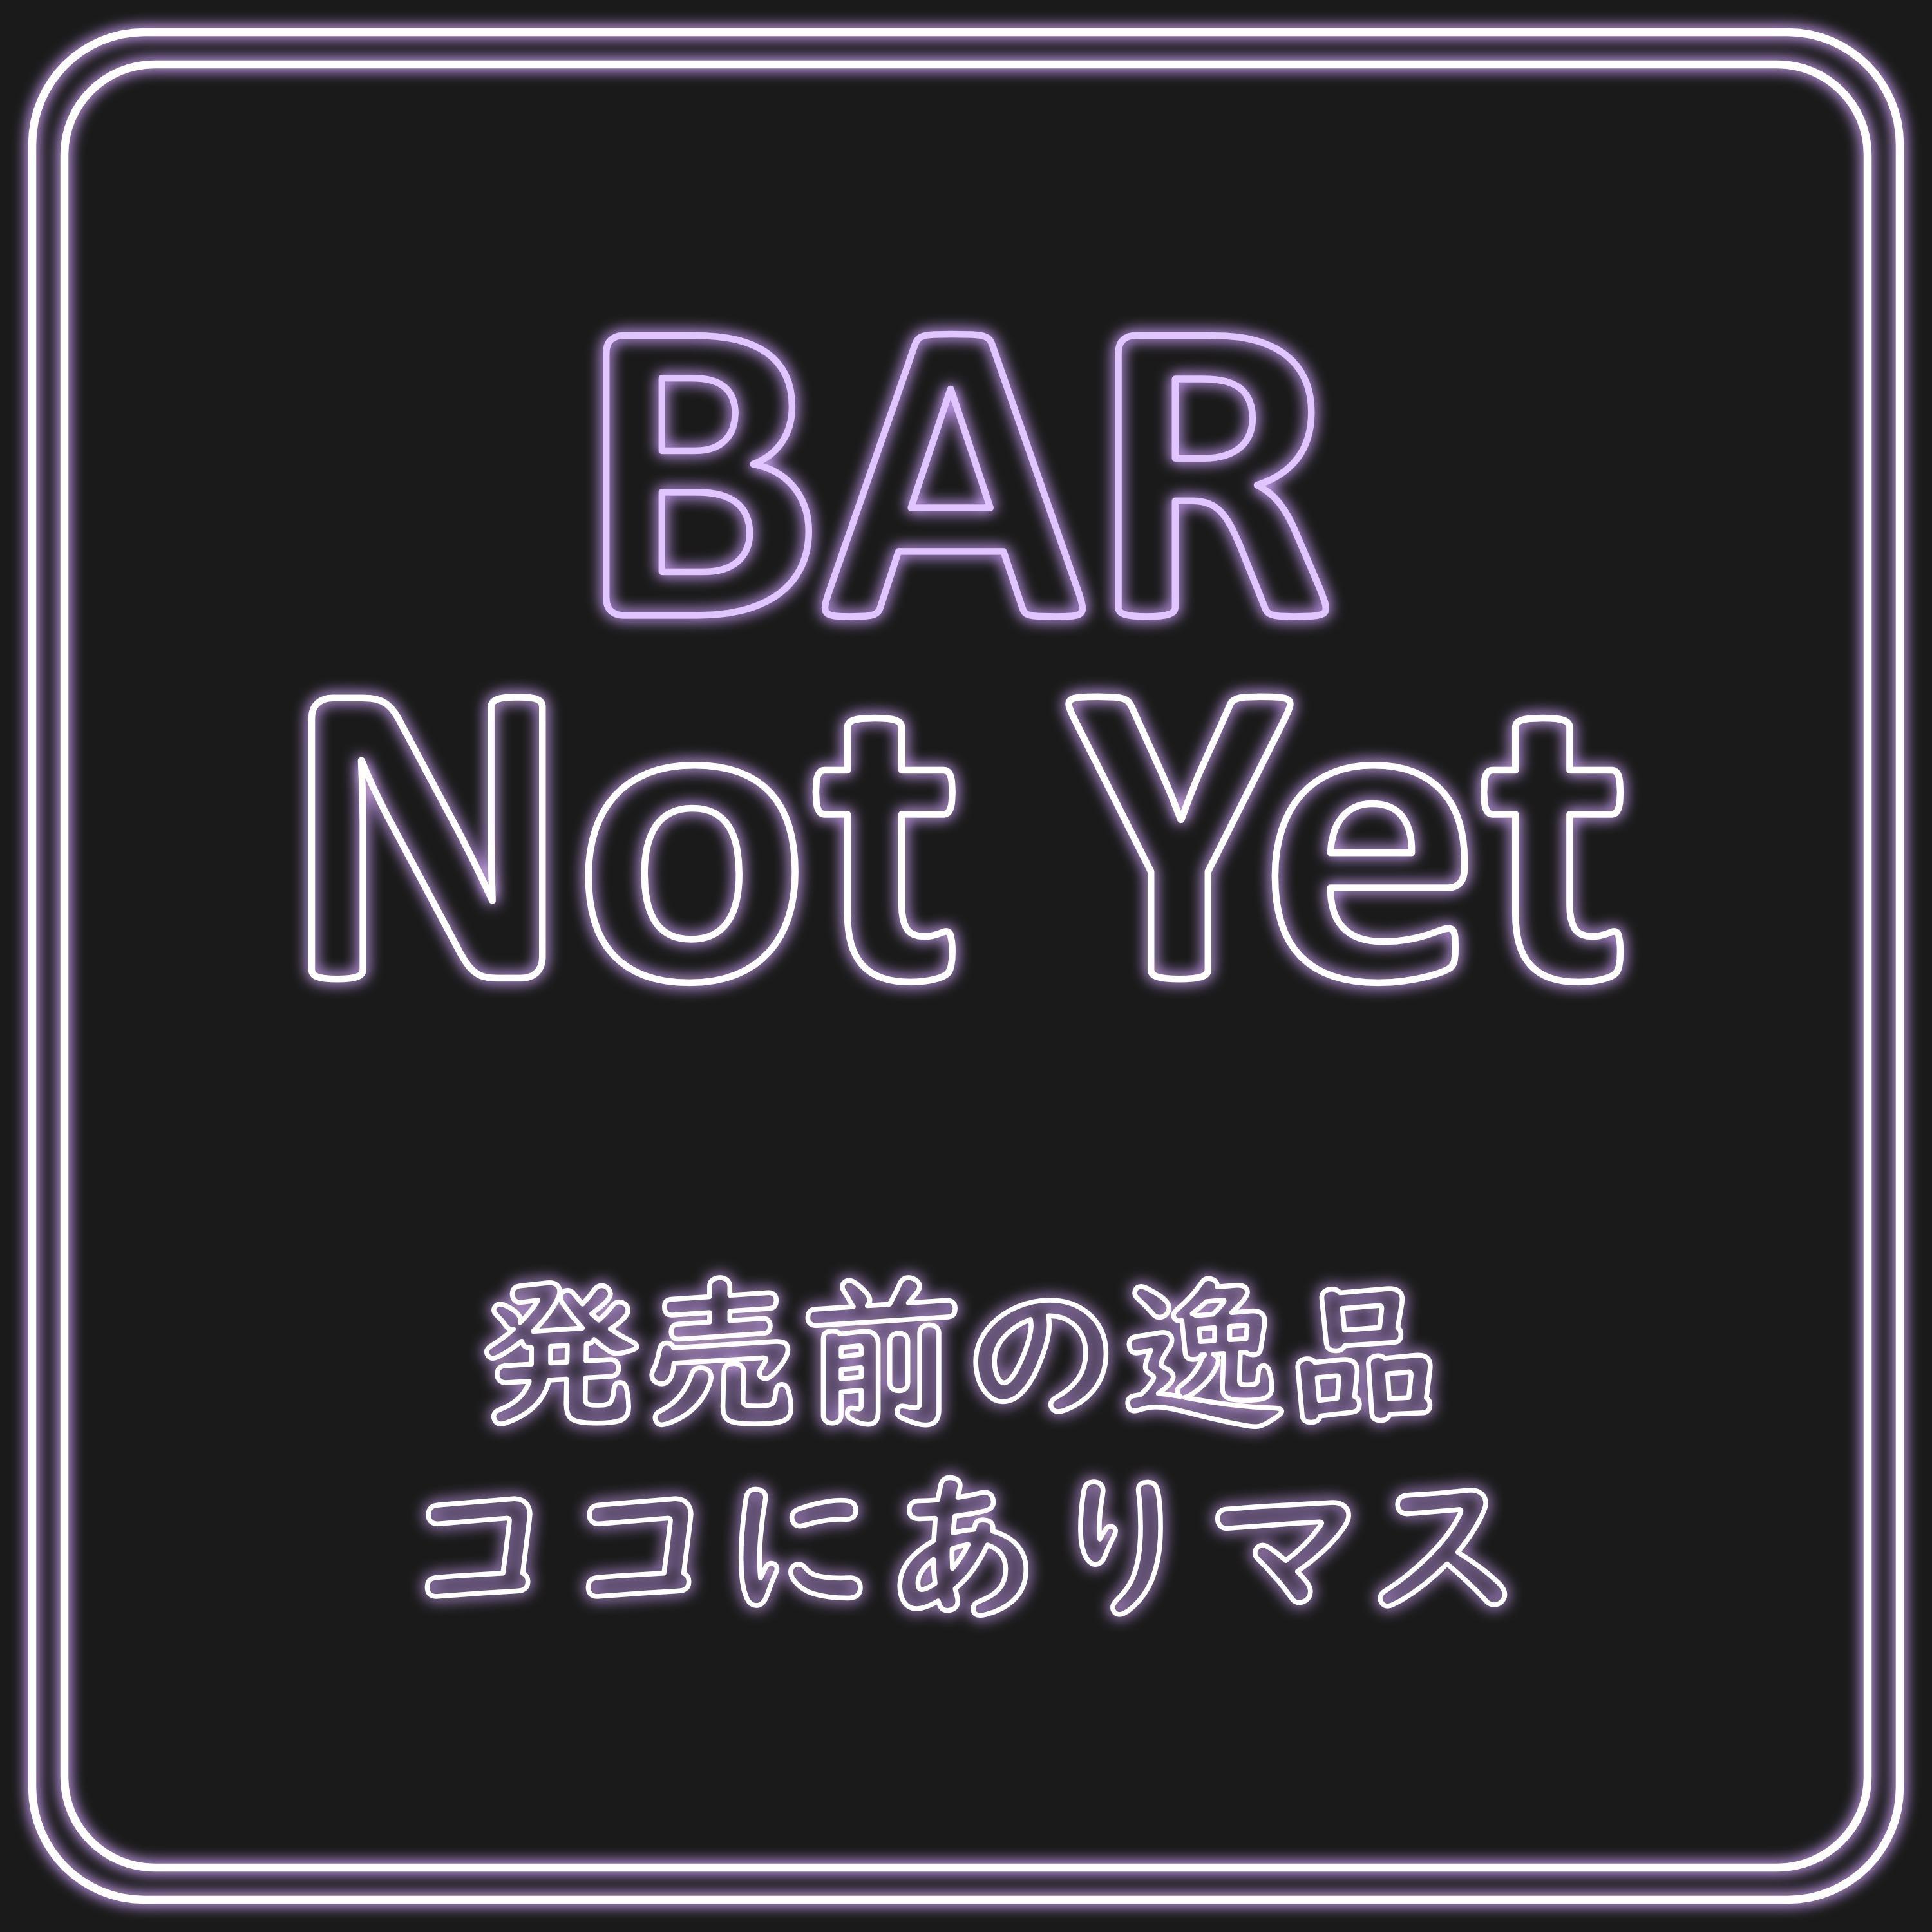 BAR Not Yet － 発売前の逸品ココにありマス